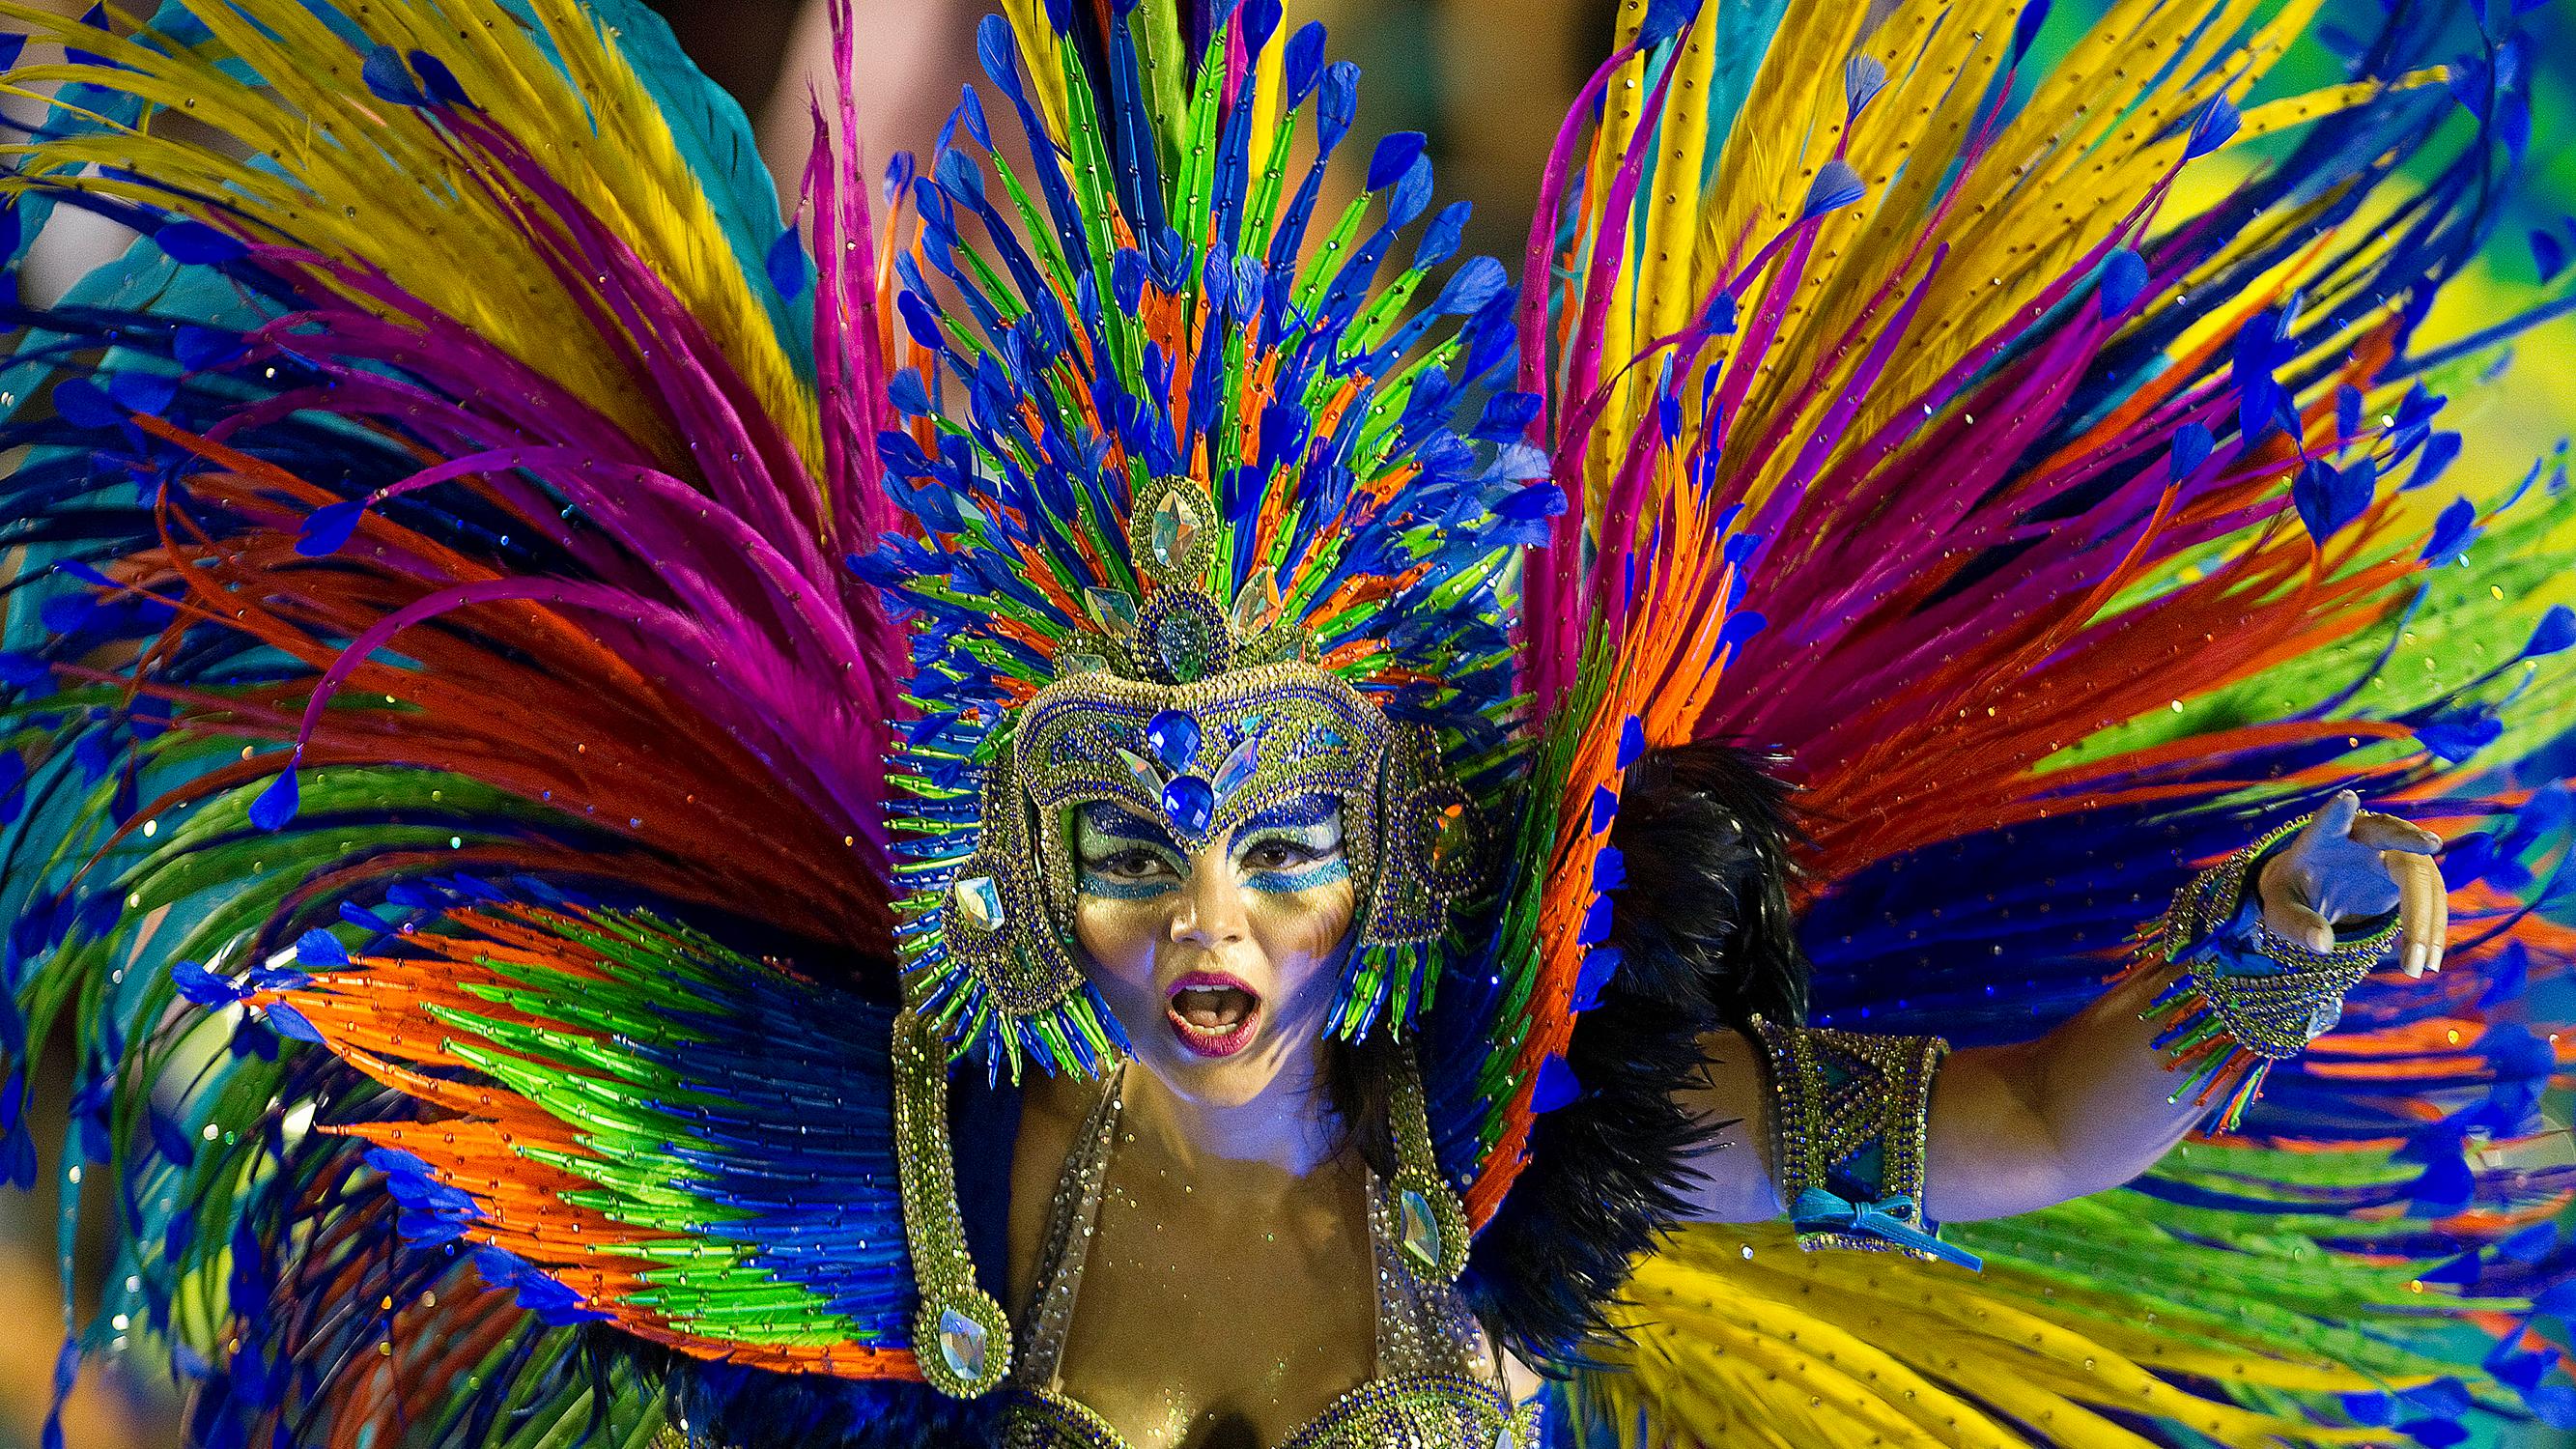 The Carnival of Brazil